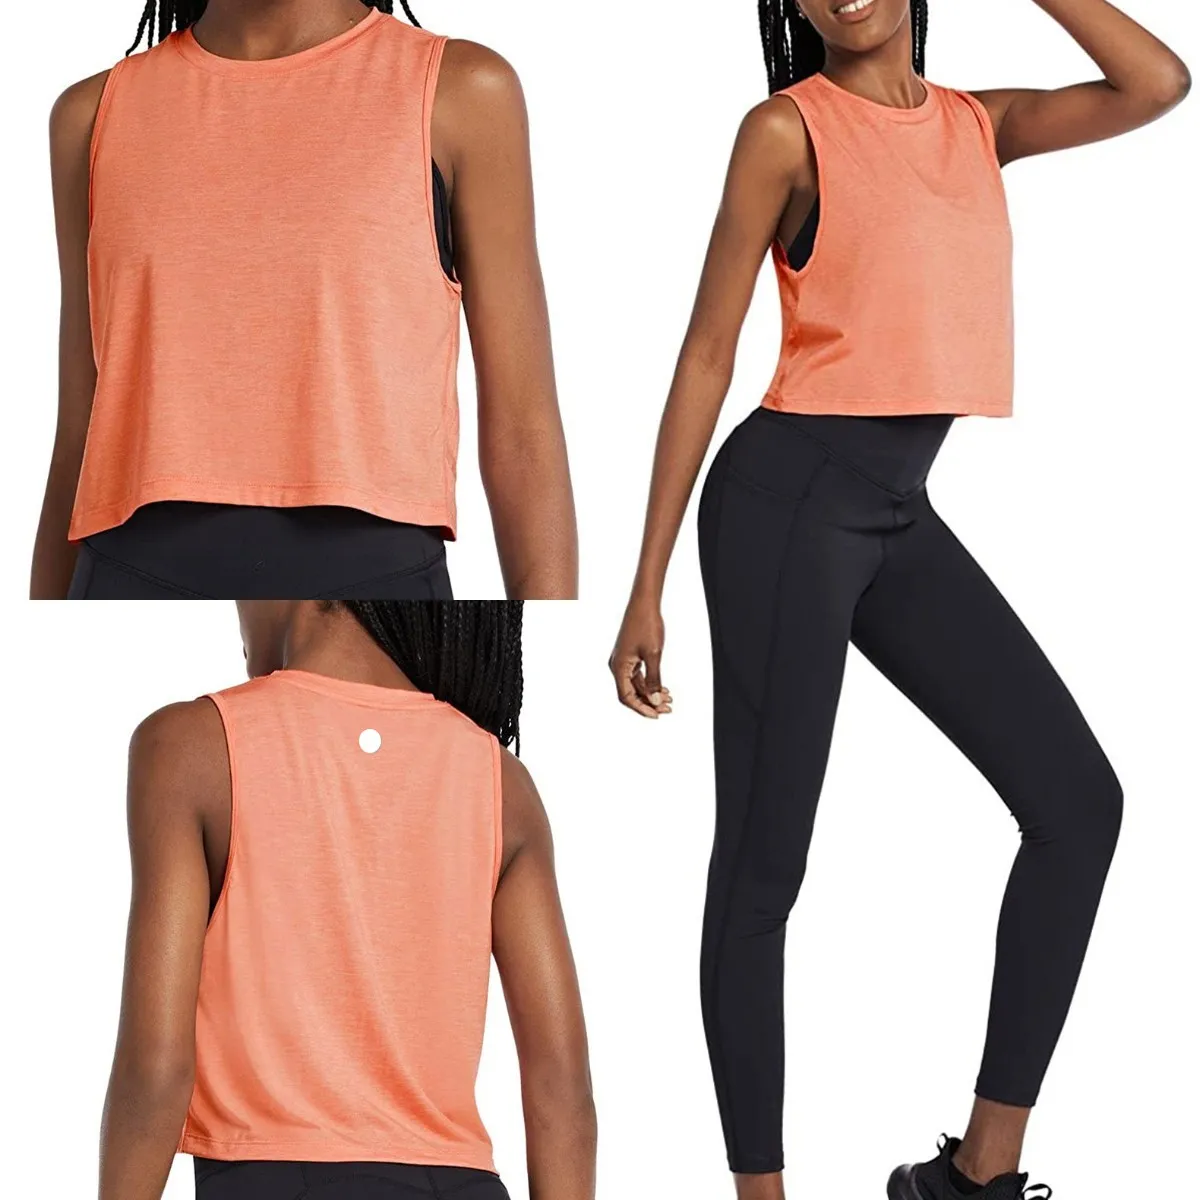 LU- 737 femmes Yoga Sport soutiens-gorge haut court débardeur pour Fitness chemises sans manches haute élasticité Sport réservoirs chemises